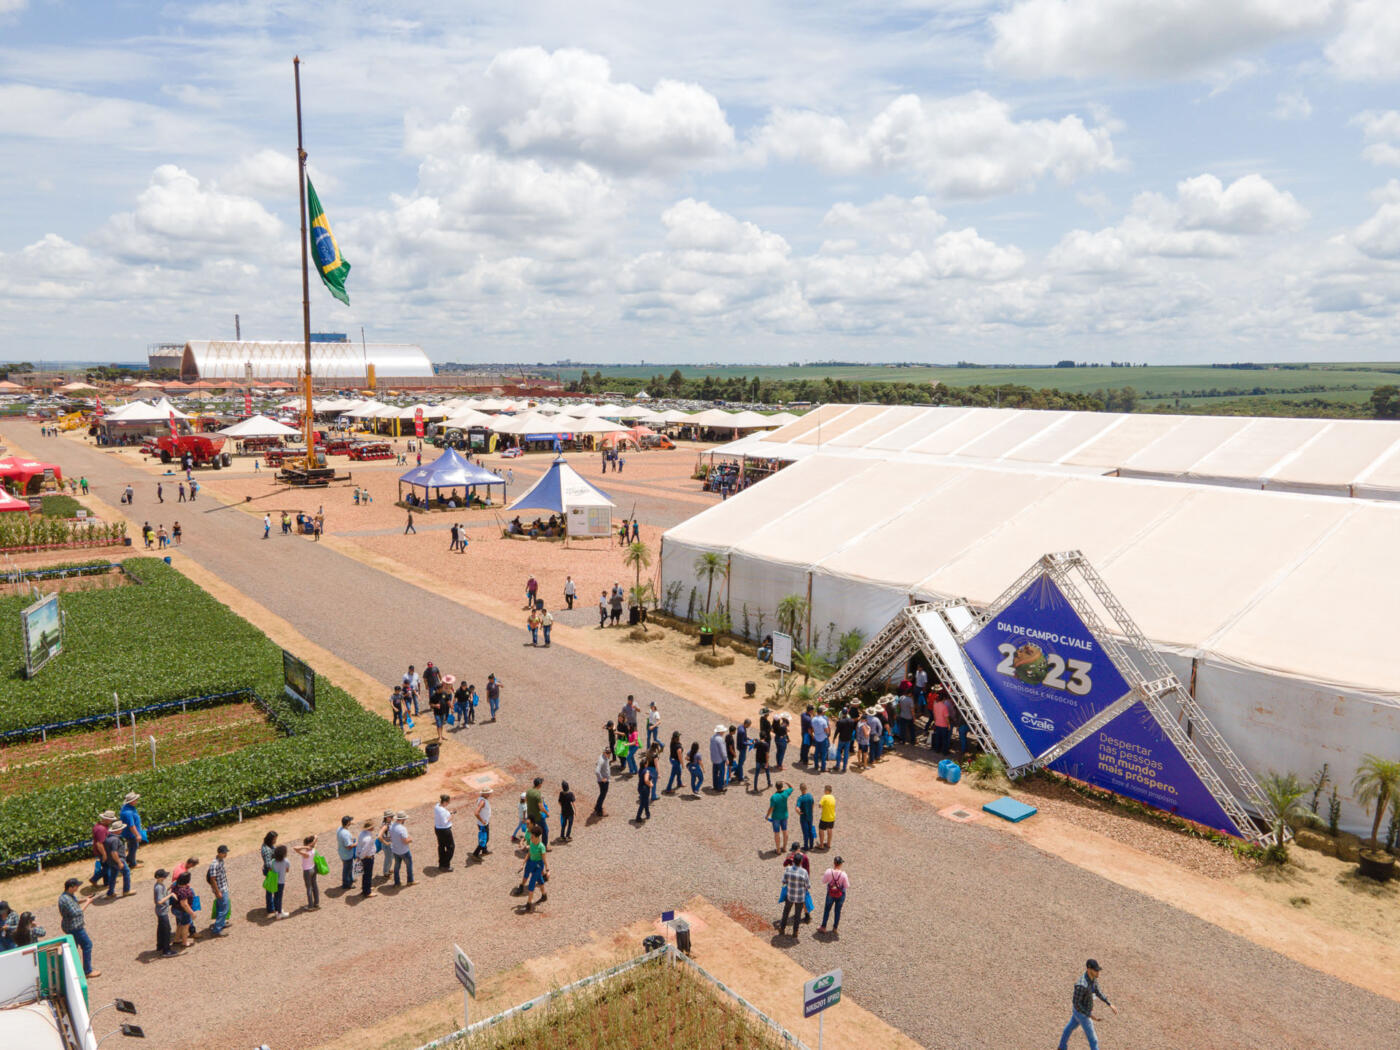 IHARA apresenta soluções inovadoras para a cultura de soja no Dia de Campo  C.Vale 2021 - Portal do Agronegócio